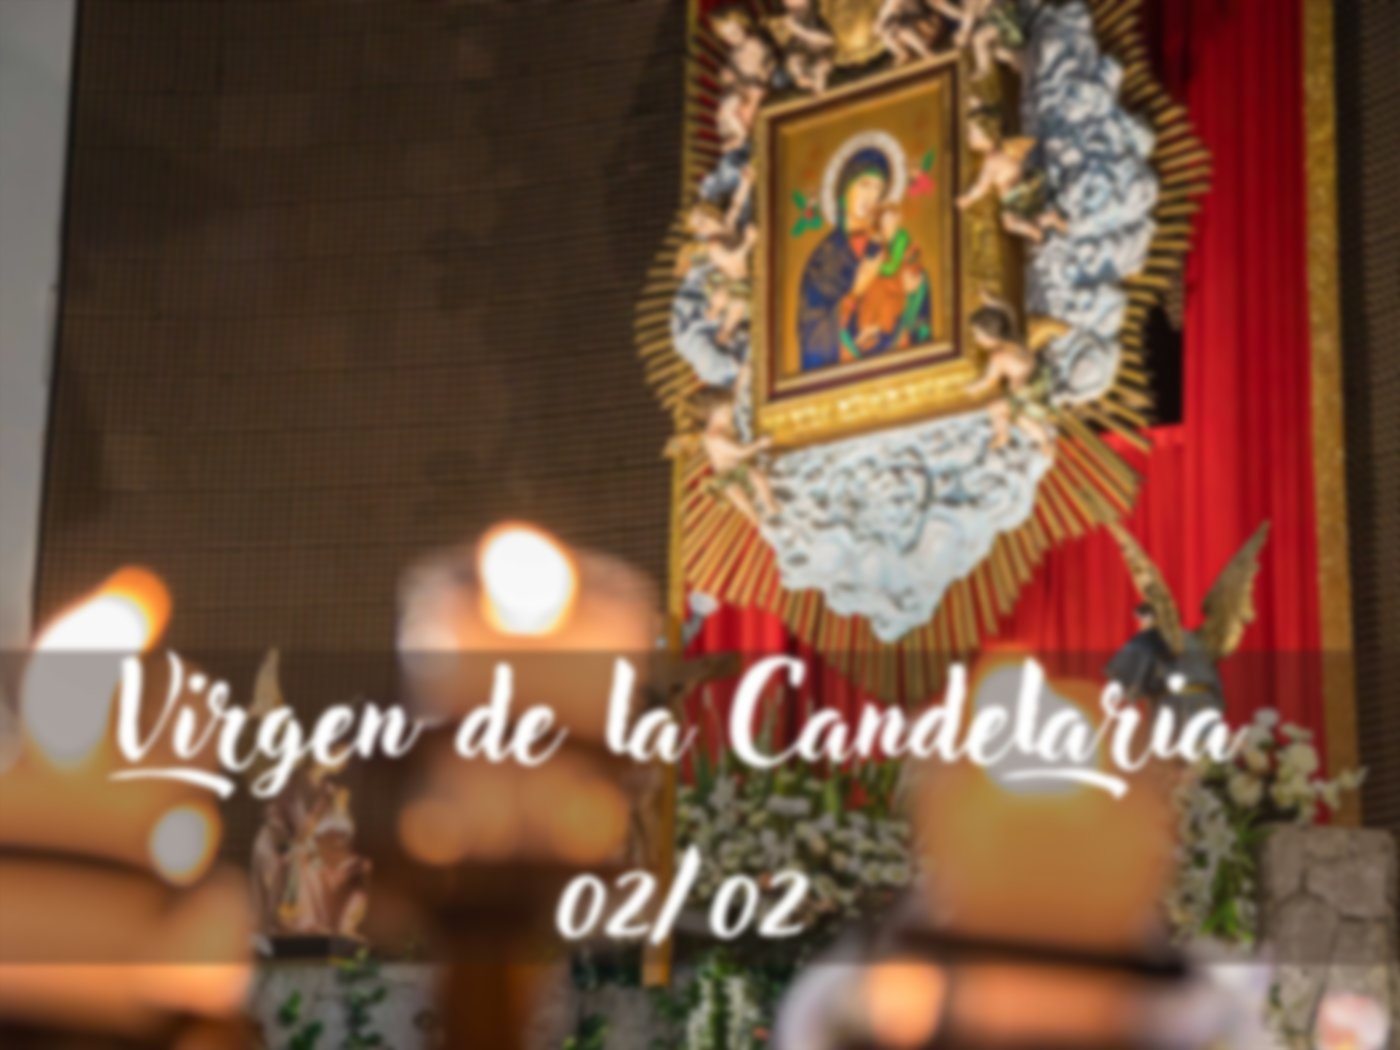 Festividad de la Virgen de la Candelaria